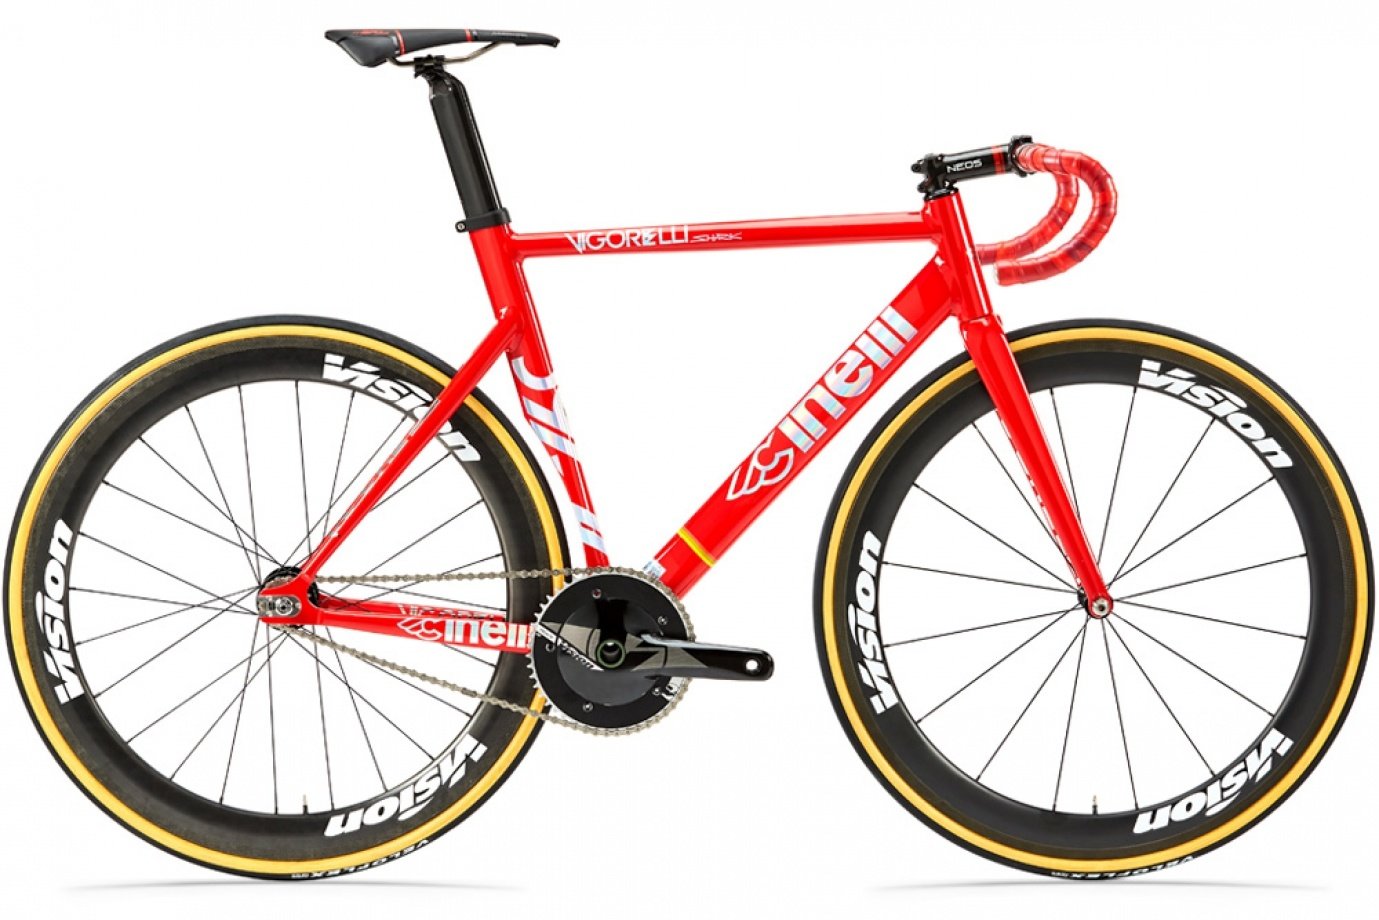 Czerwony sportowy, aerodynamiczny rower single speed firmy Cinelli z jednobiegową przerzutką, sportowym siodełkiem i z zakrzywioną sportową kierownicą.